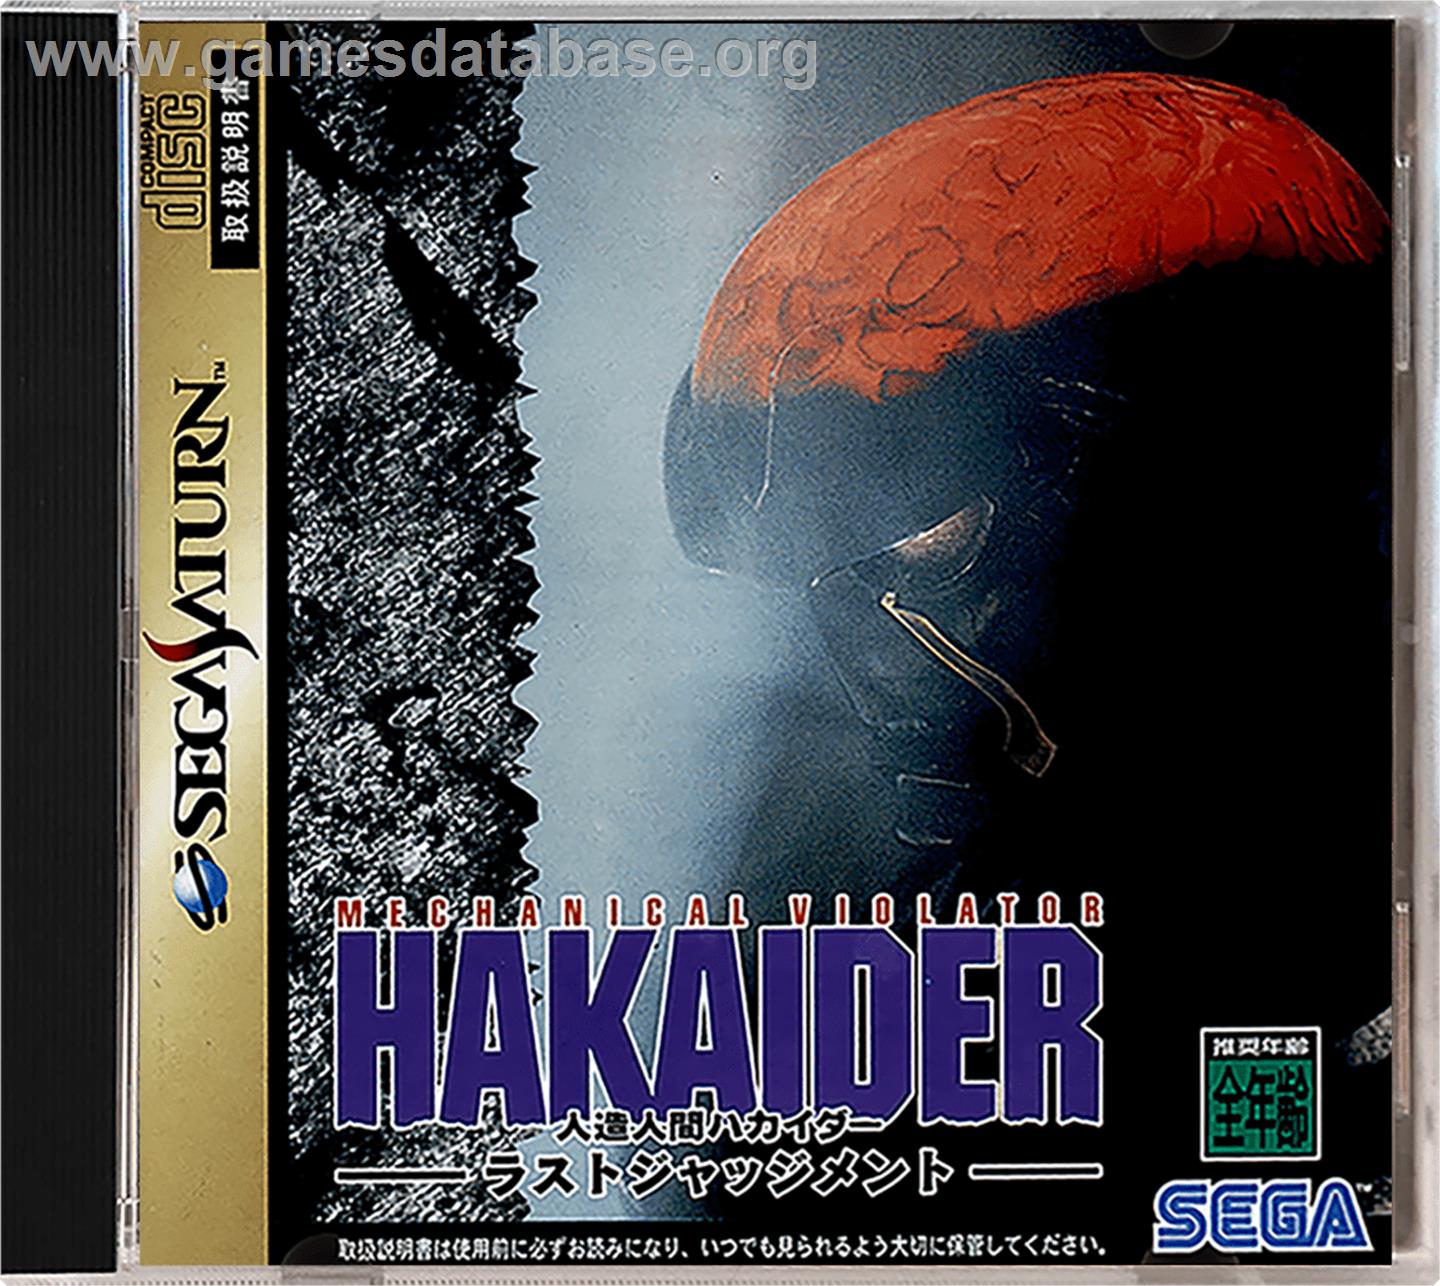 Mechanical Violator Hakaider - Last Judgement - Sega Saturn - Artwork - Box